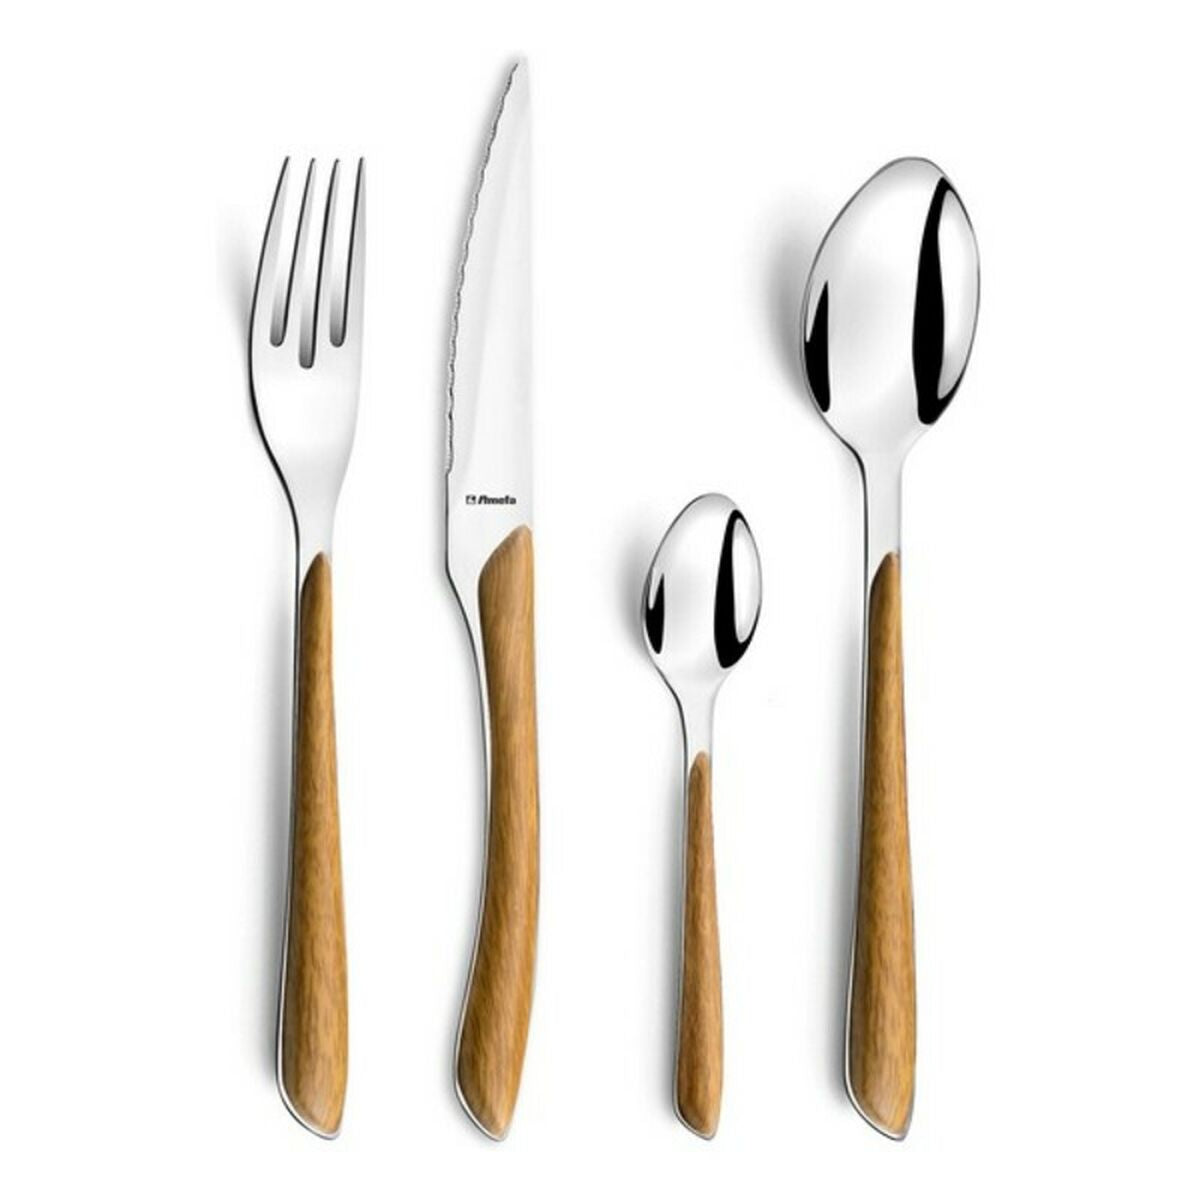 Amefa Cutlery Set Amefa 2274Pwpa10C40 Wood Metal Stainless Steel 24 Pieces